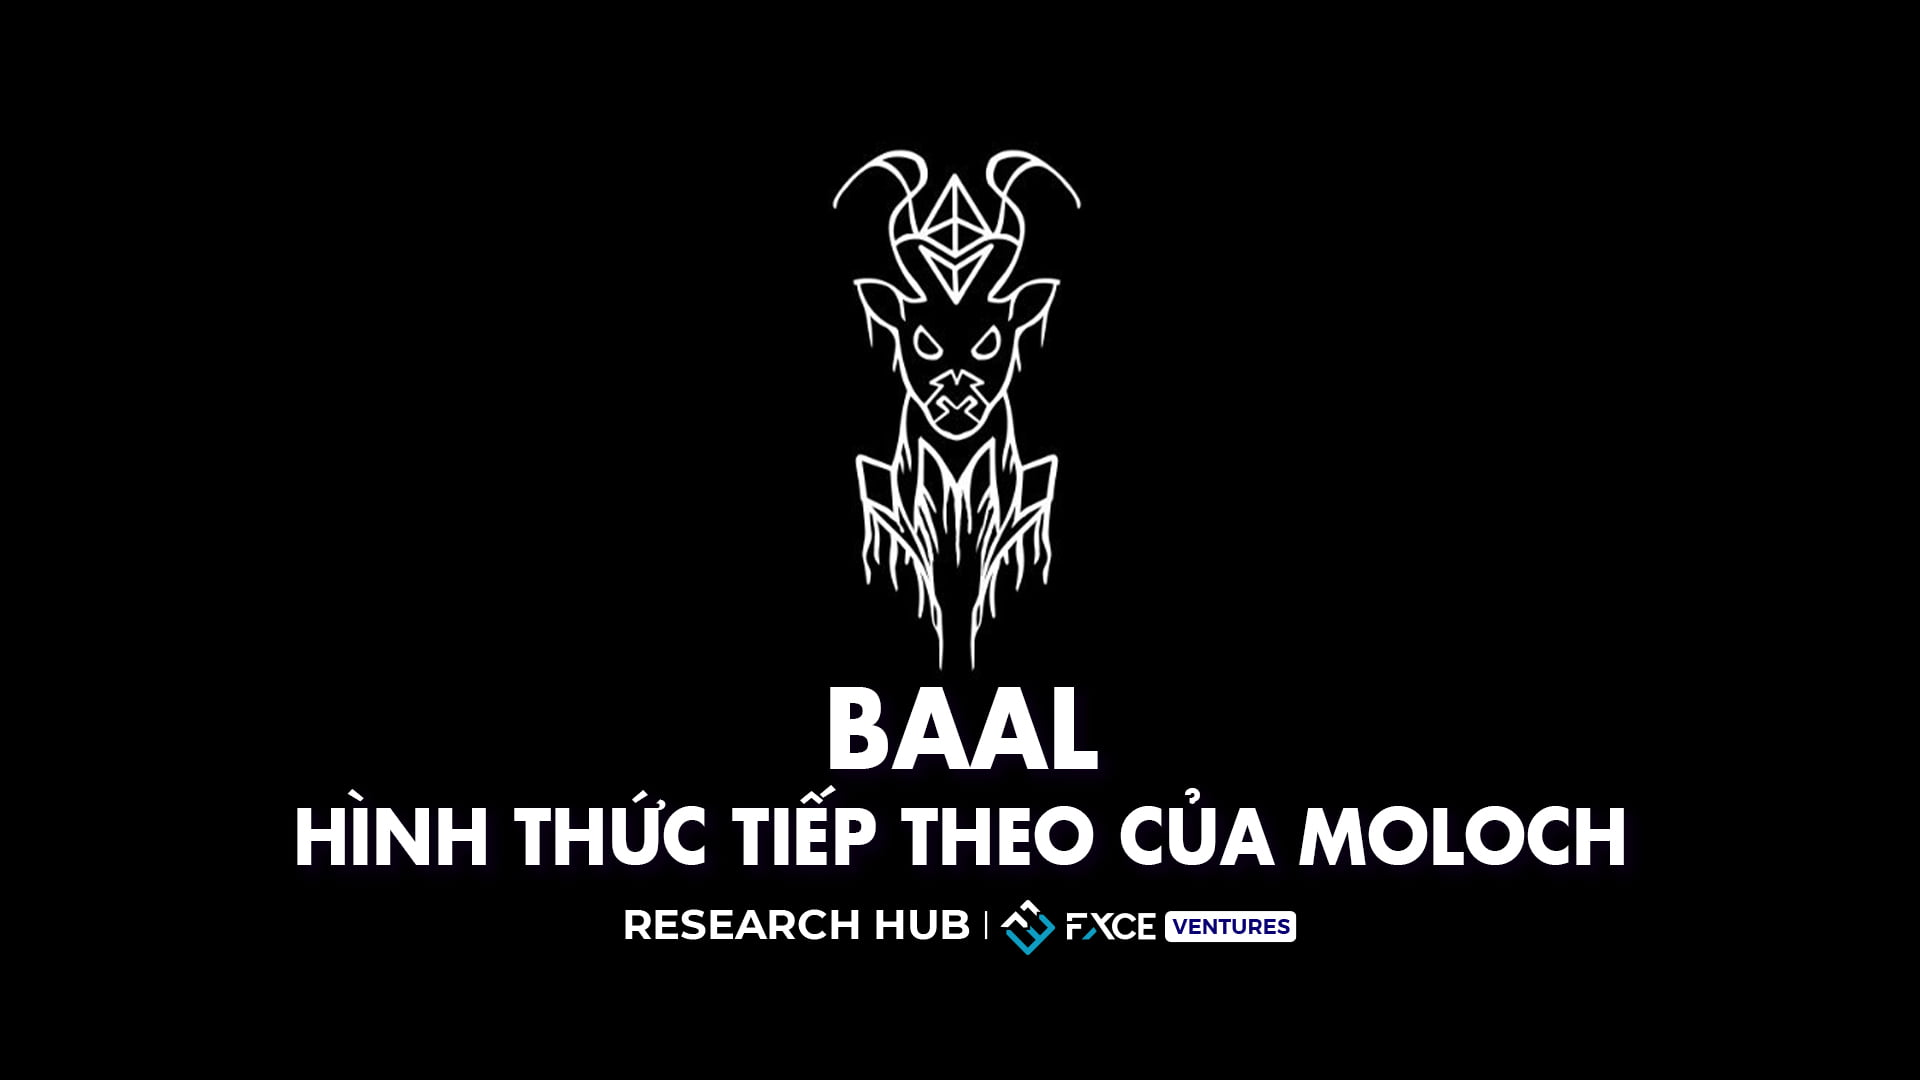 Baal: Hình thức tiếp theo của Moloch